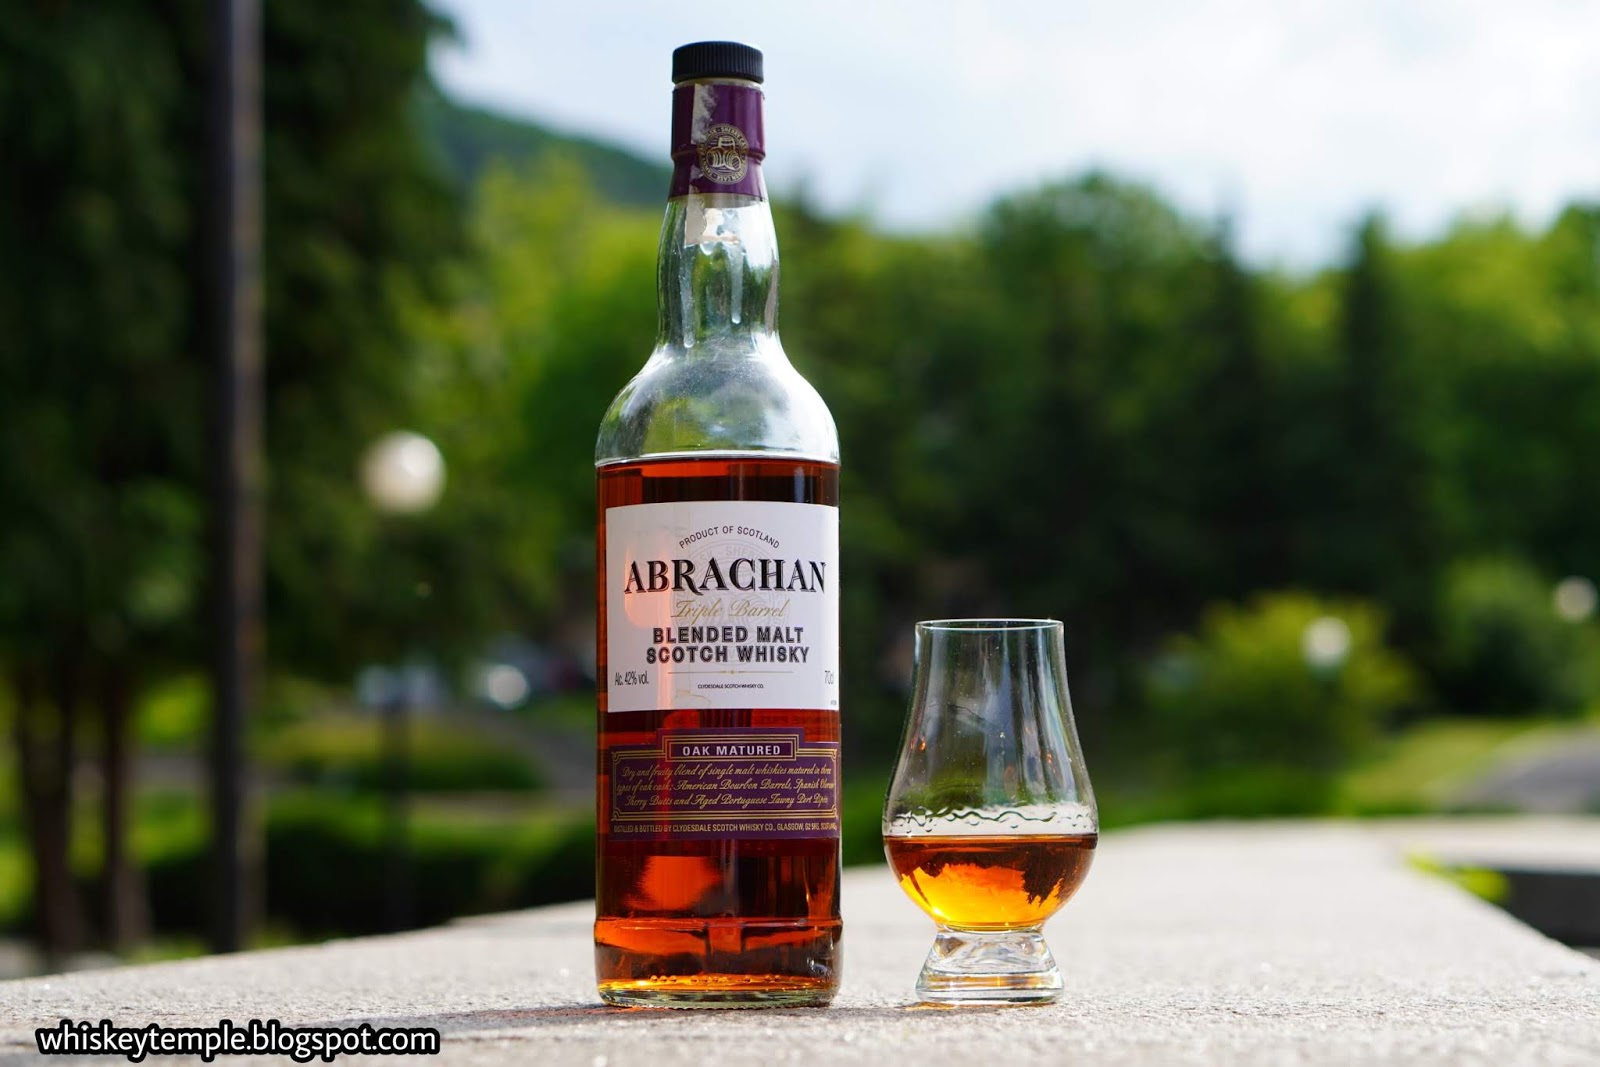 blended malt barrel – Triple whisky Whiskeytemple Abrachan